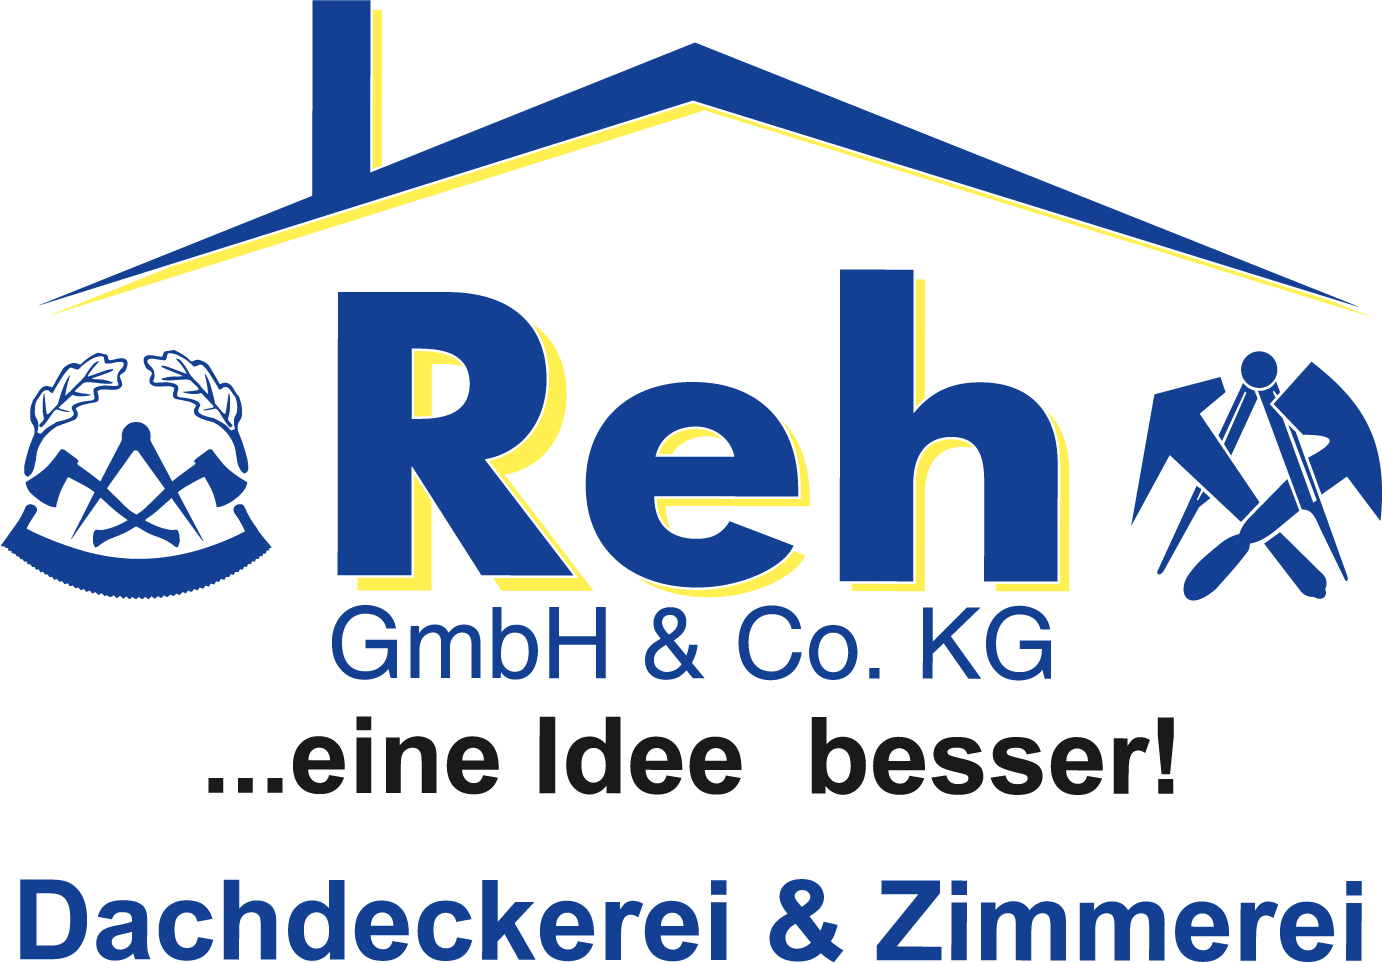 Die Dachdeckerei und Zimmerei Reh GmbH & Co. KG in Dreis erstellt für Sie Dachkonstruktionen und berät Sie umfassend bei Fragen zum Holzrahmenbau.